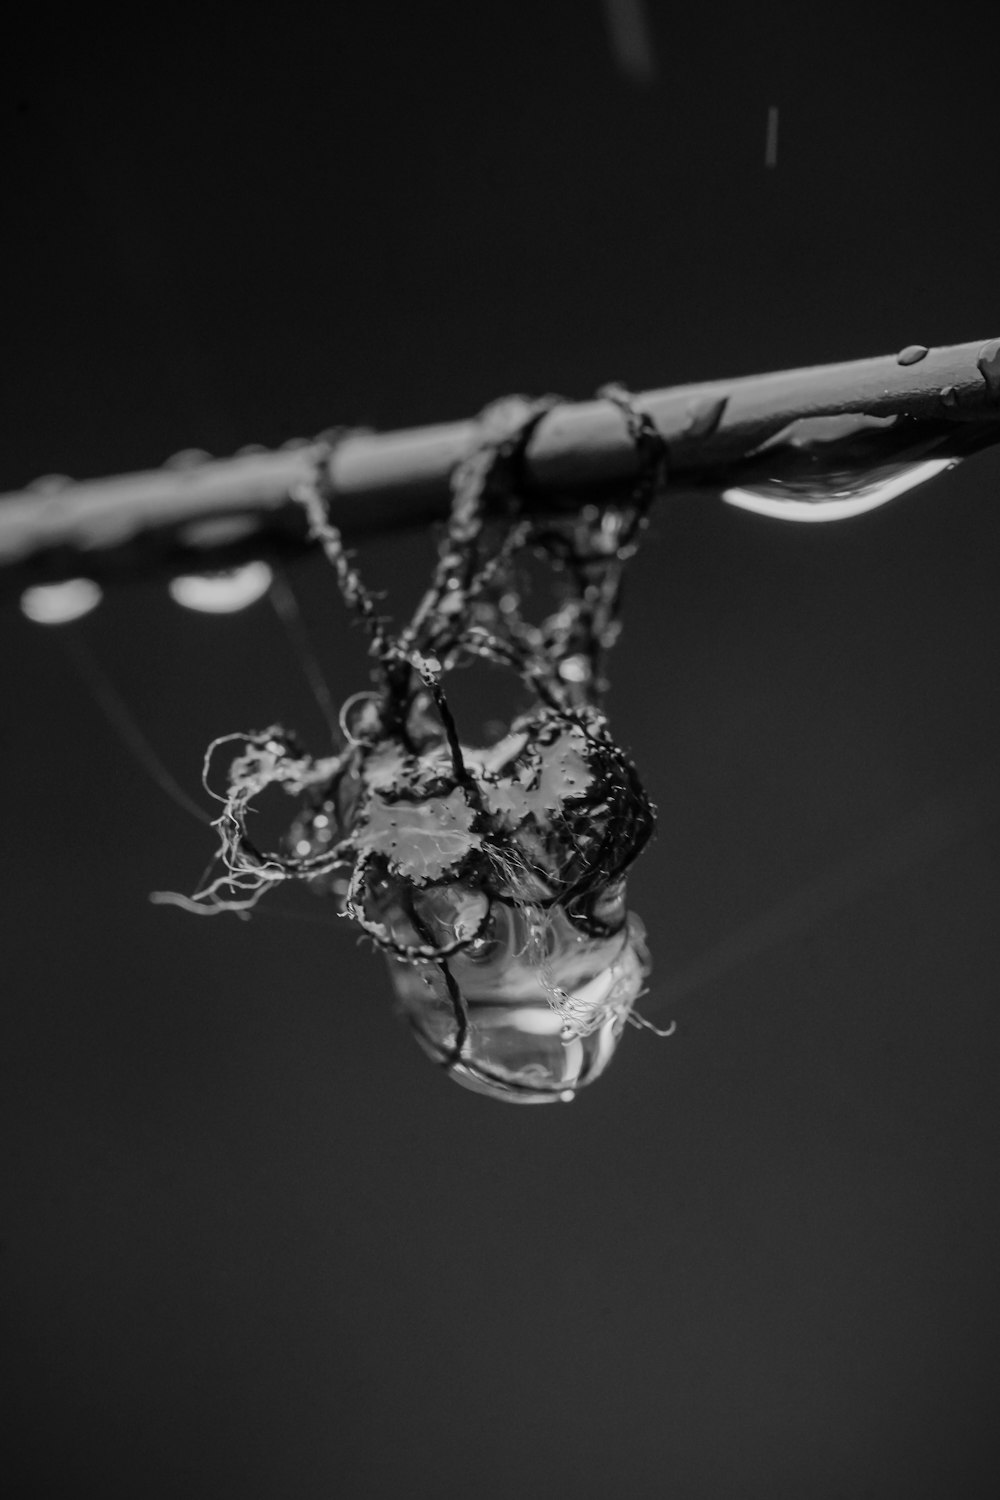 木の枝の水滴のグレースケール写真